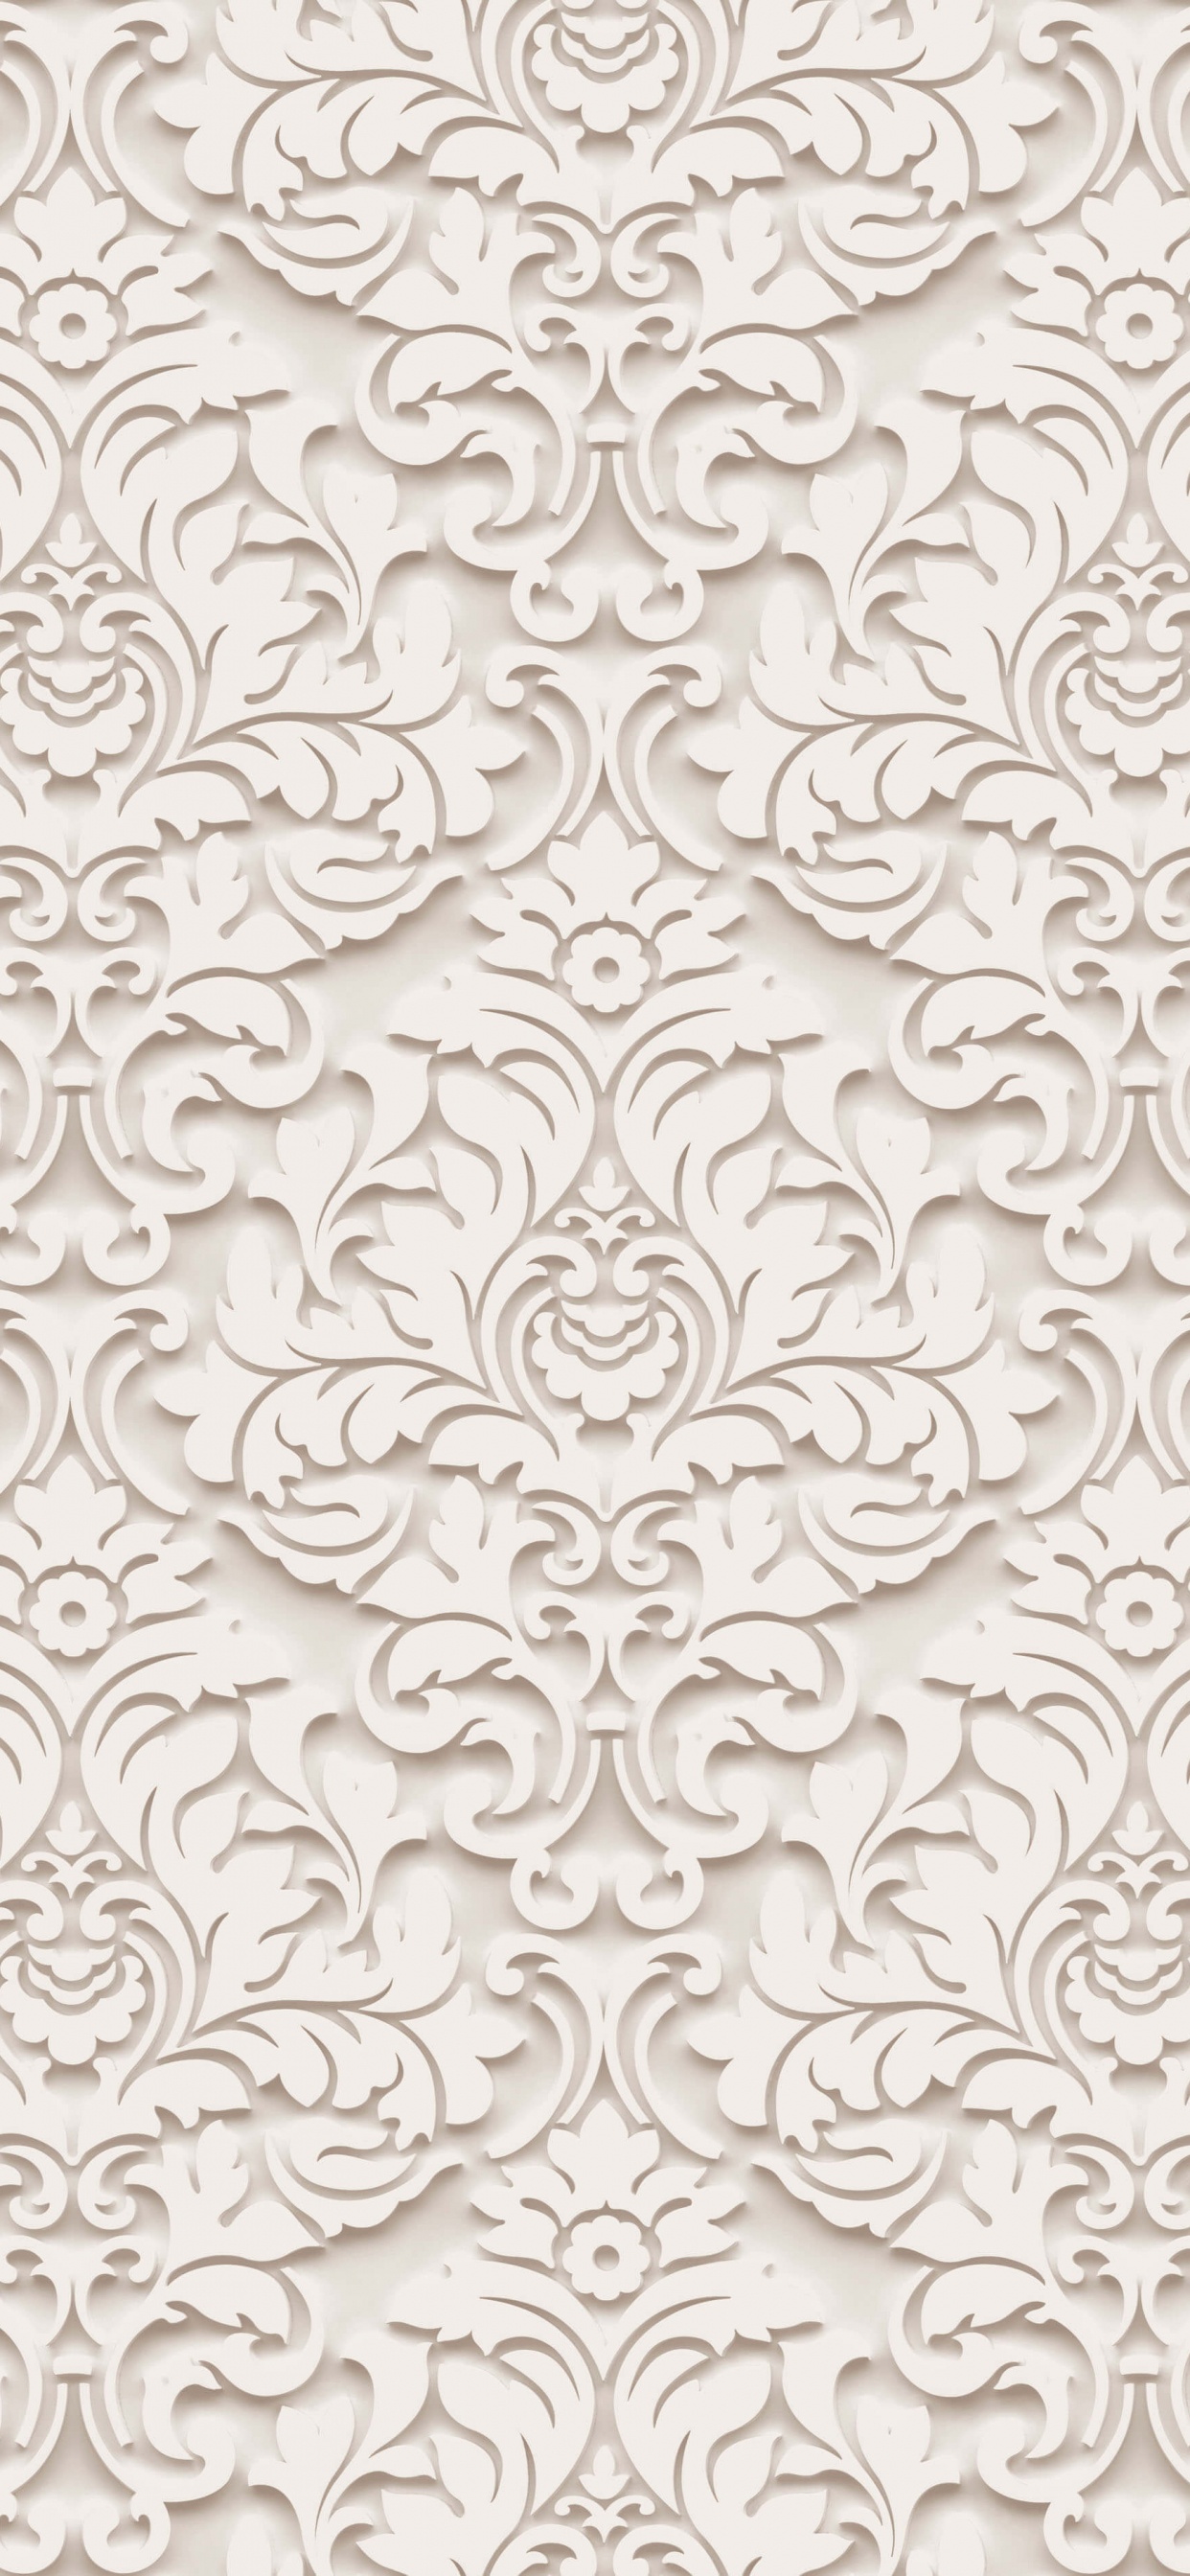 Textile Floral Blanc et Noir. Wallpaper in 1242x2688 Resolution